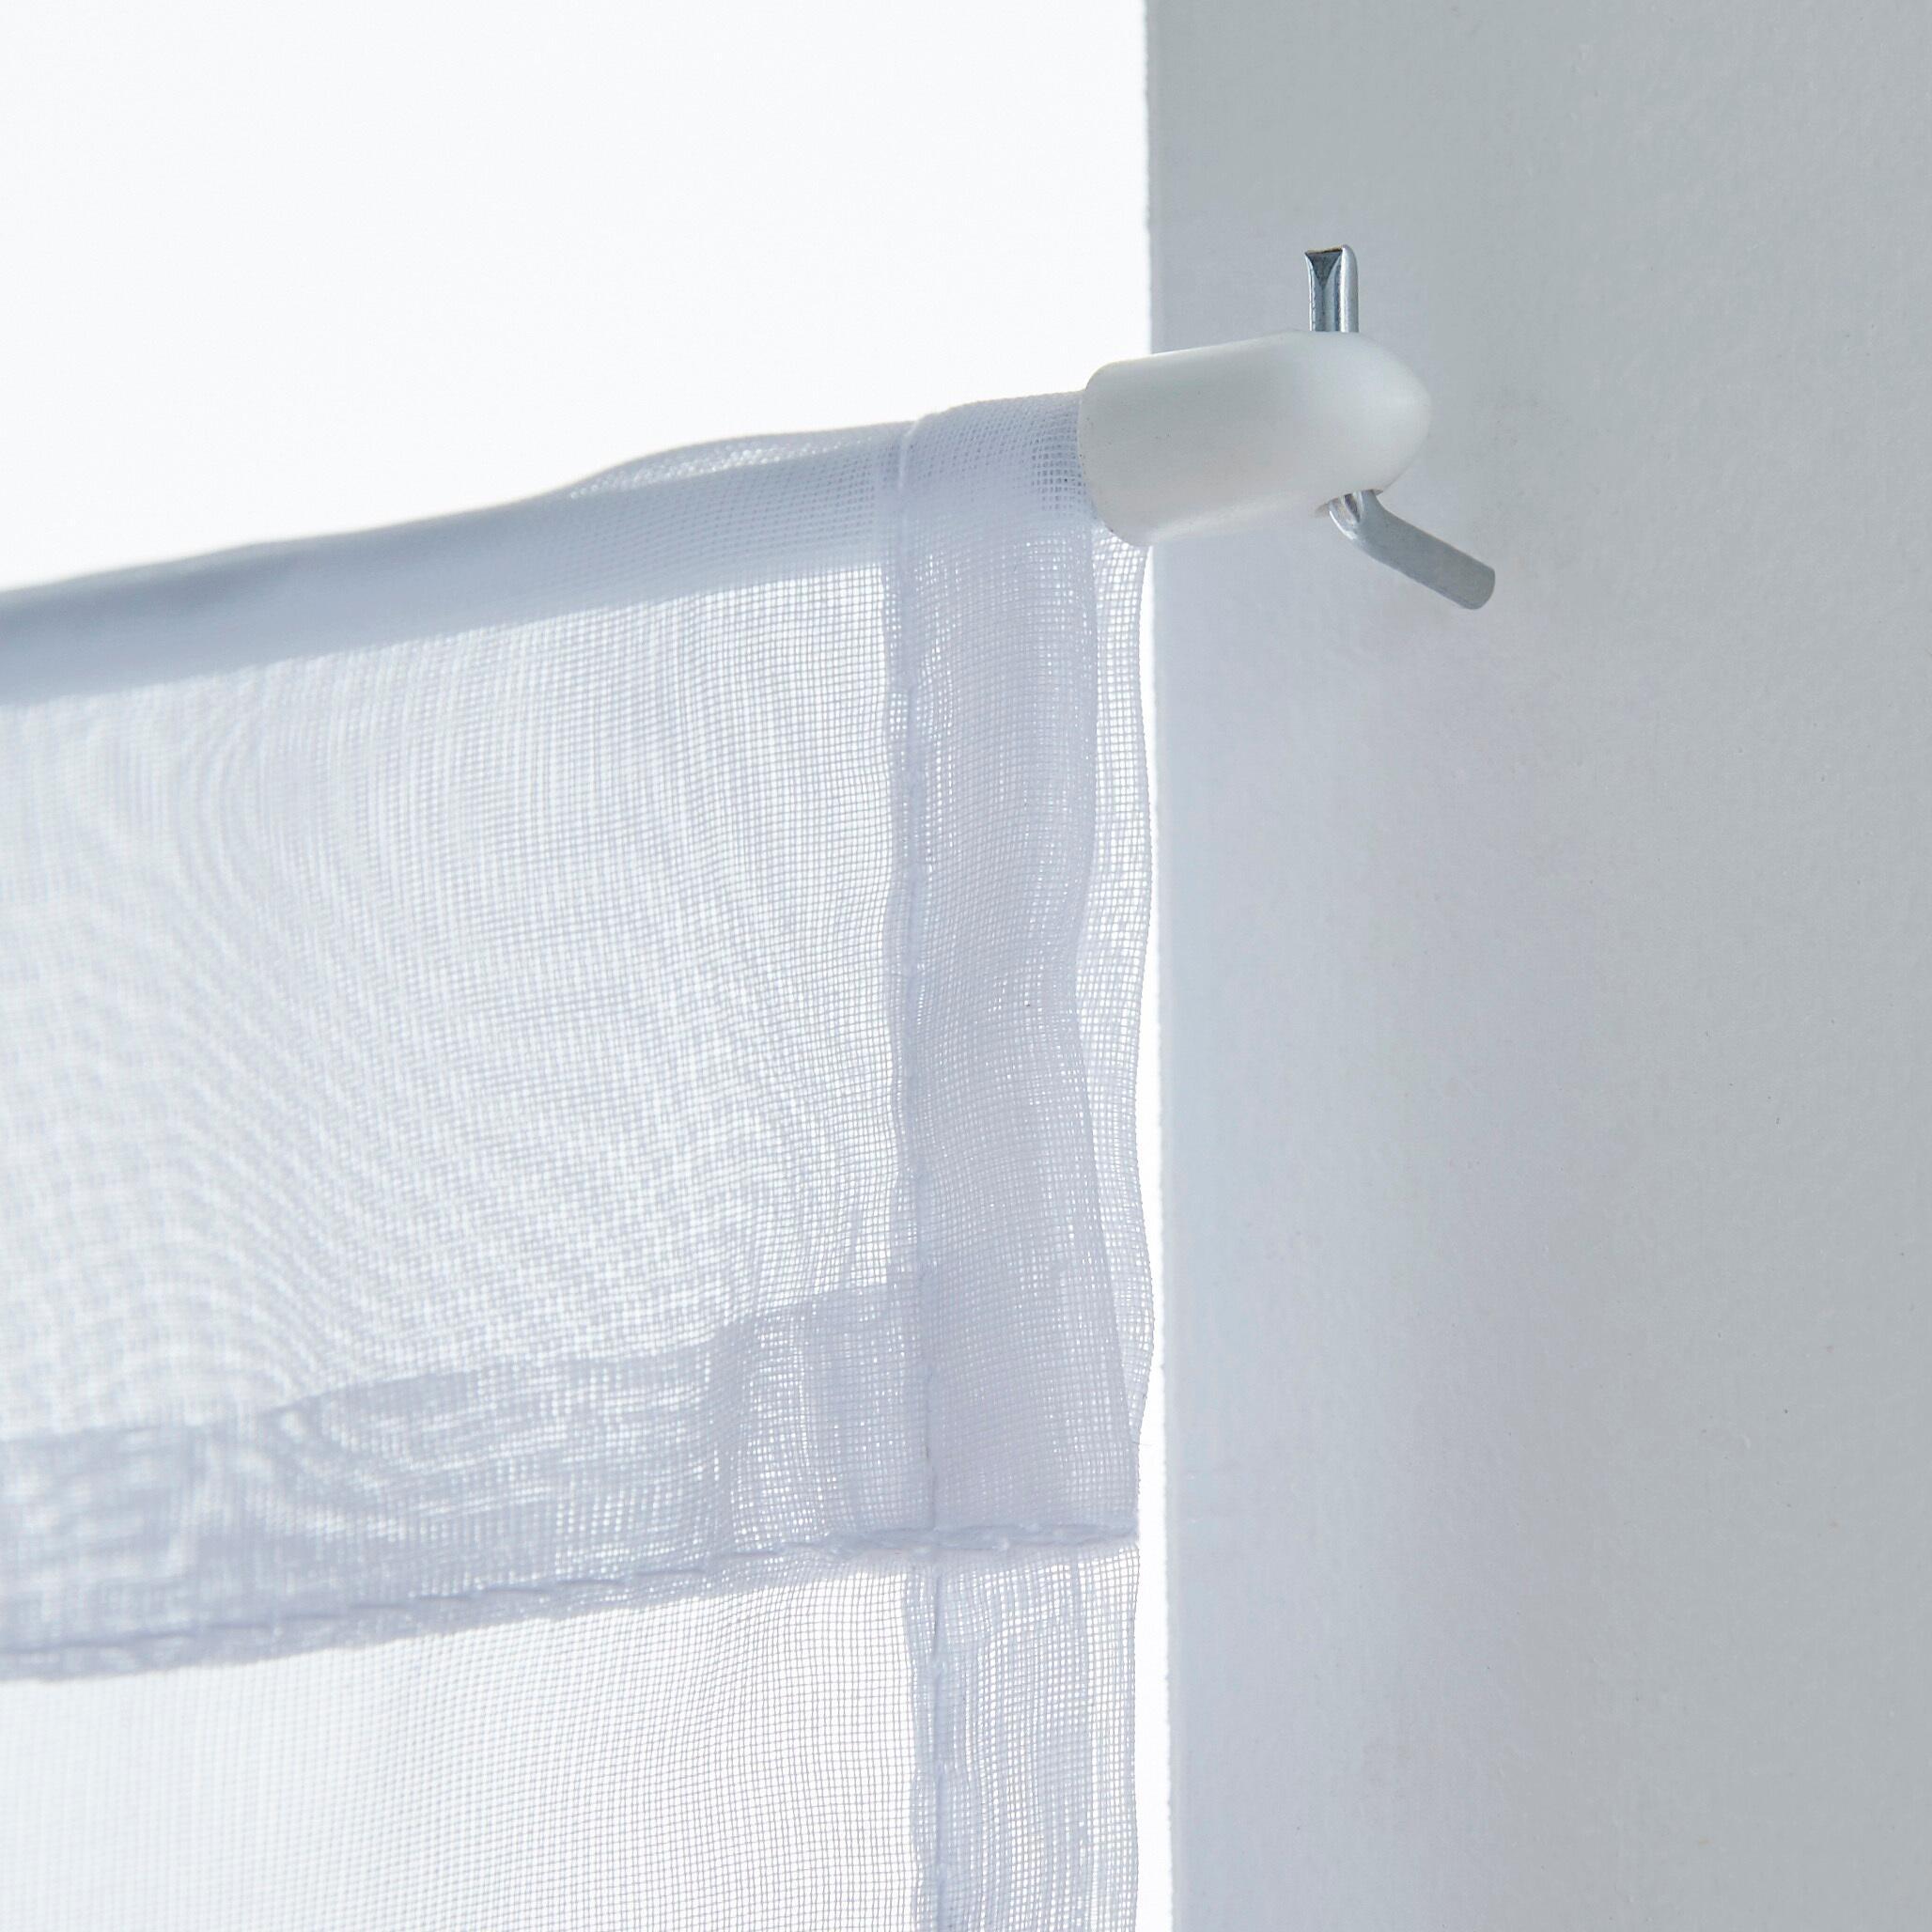 Come appendere le tende senza bucare gli infissi e i muri di casa